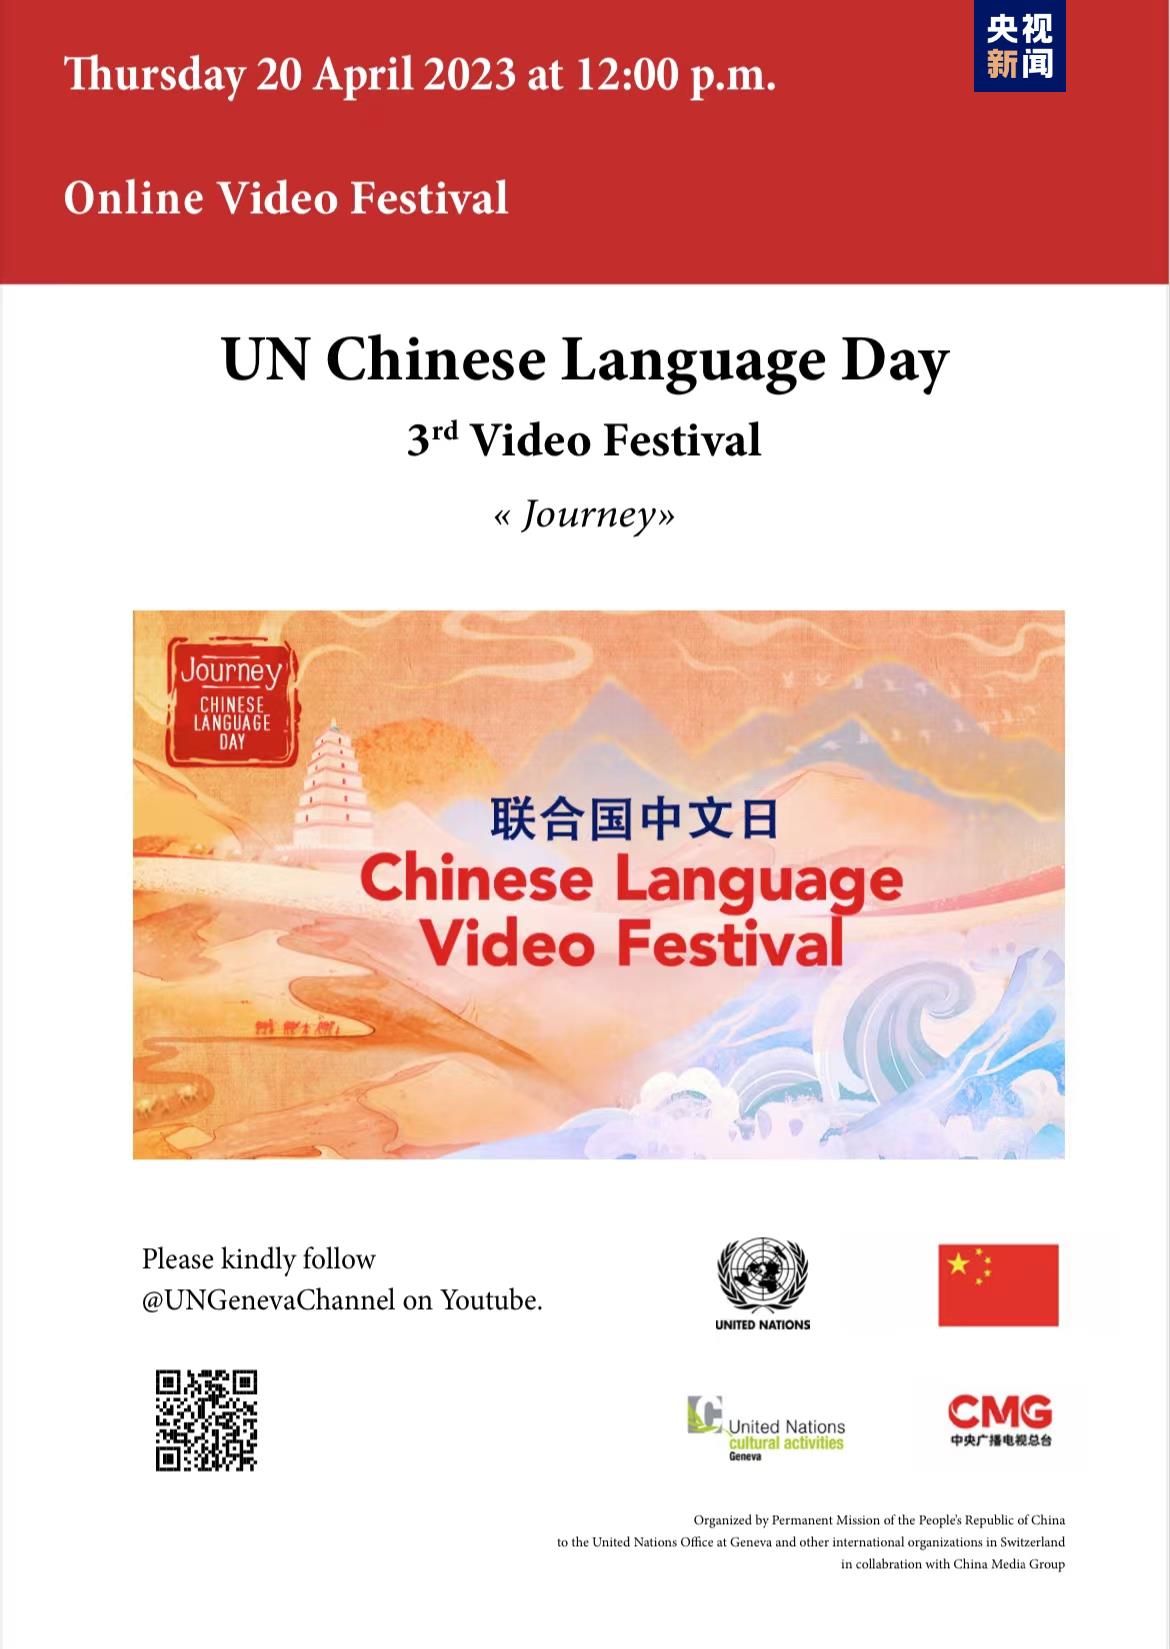 सन् २०२३ राष्ट्र संघीय चिनियाँ भाषा दिवस एवम् चाइना मिडिया ग्रुपको तेस्रो भिडियो महोत्सव आयोजित